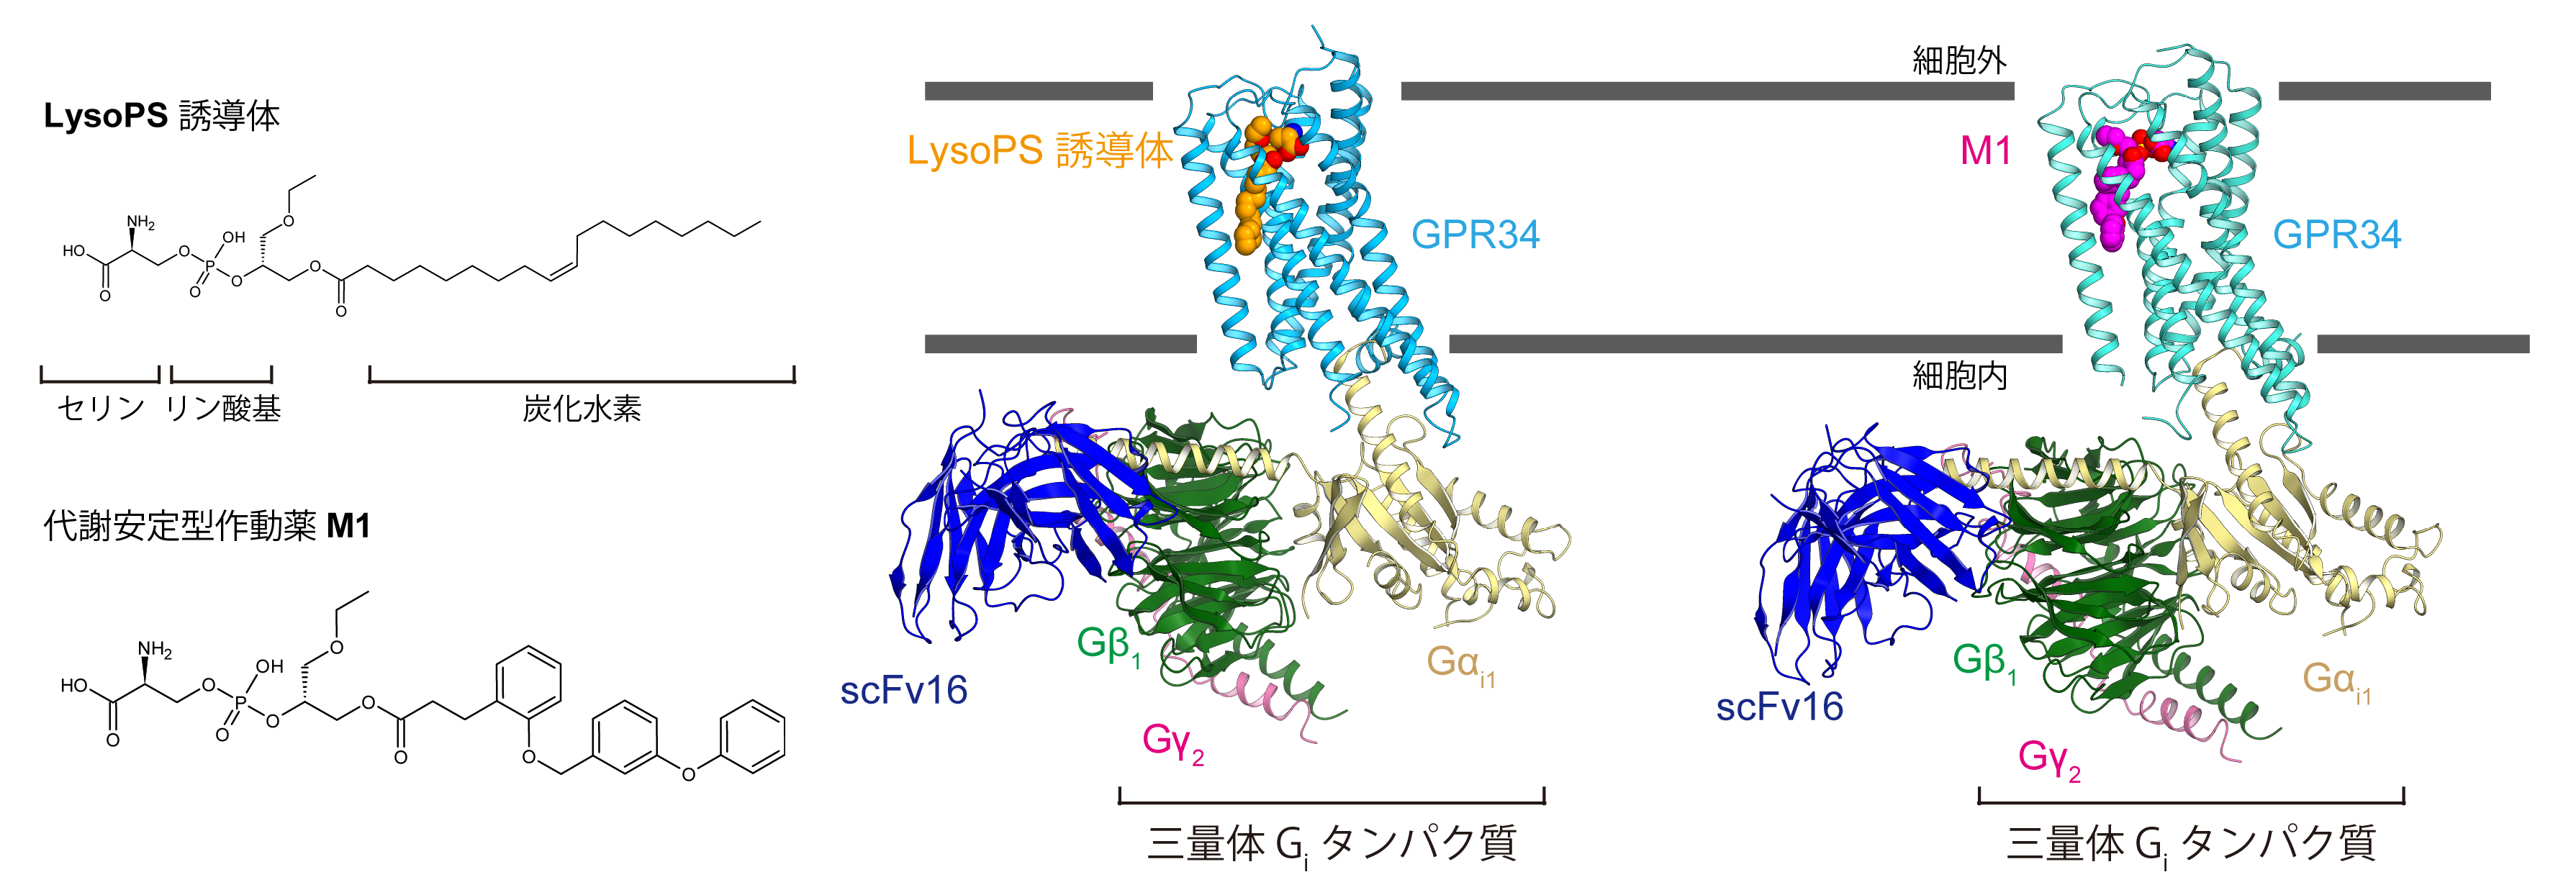 免疫応答に関わるLysoPS受容体の活性型構造の解明